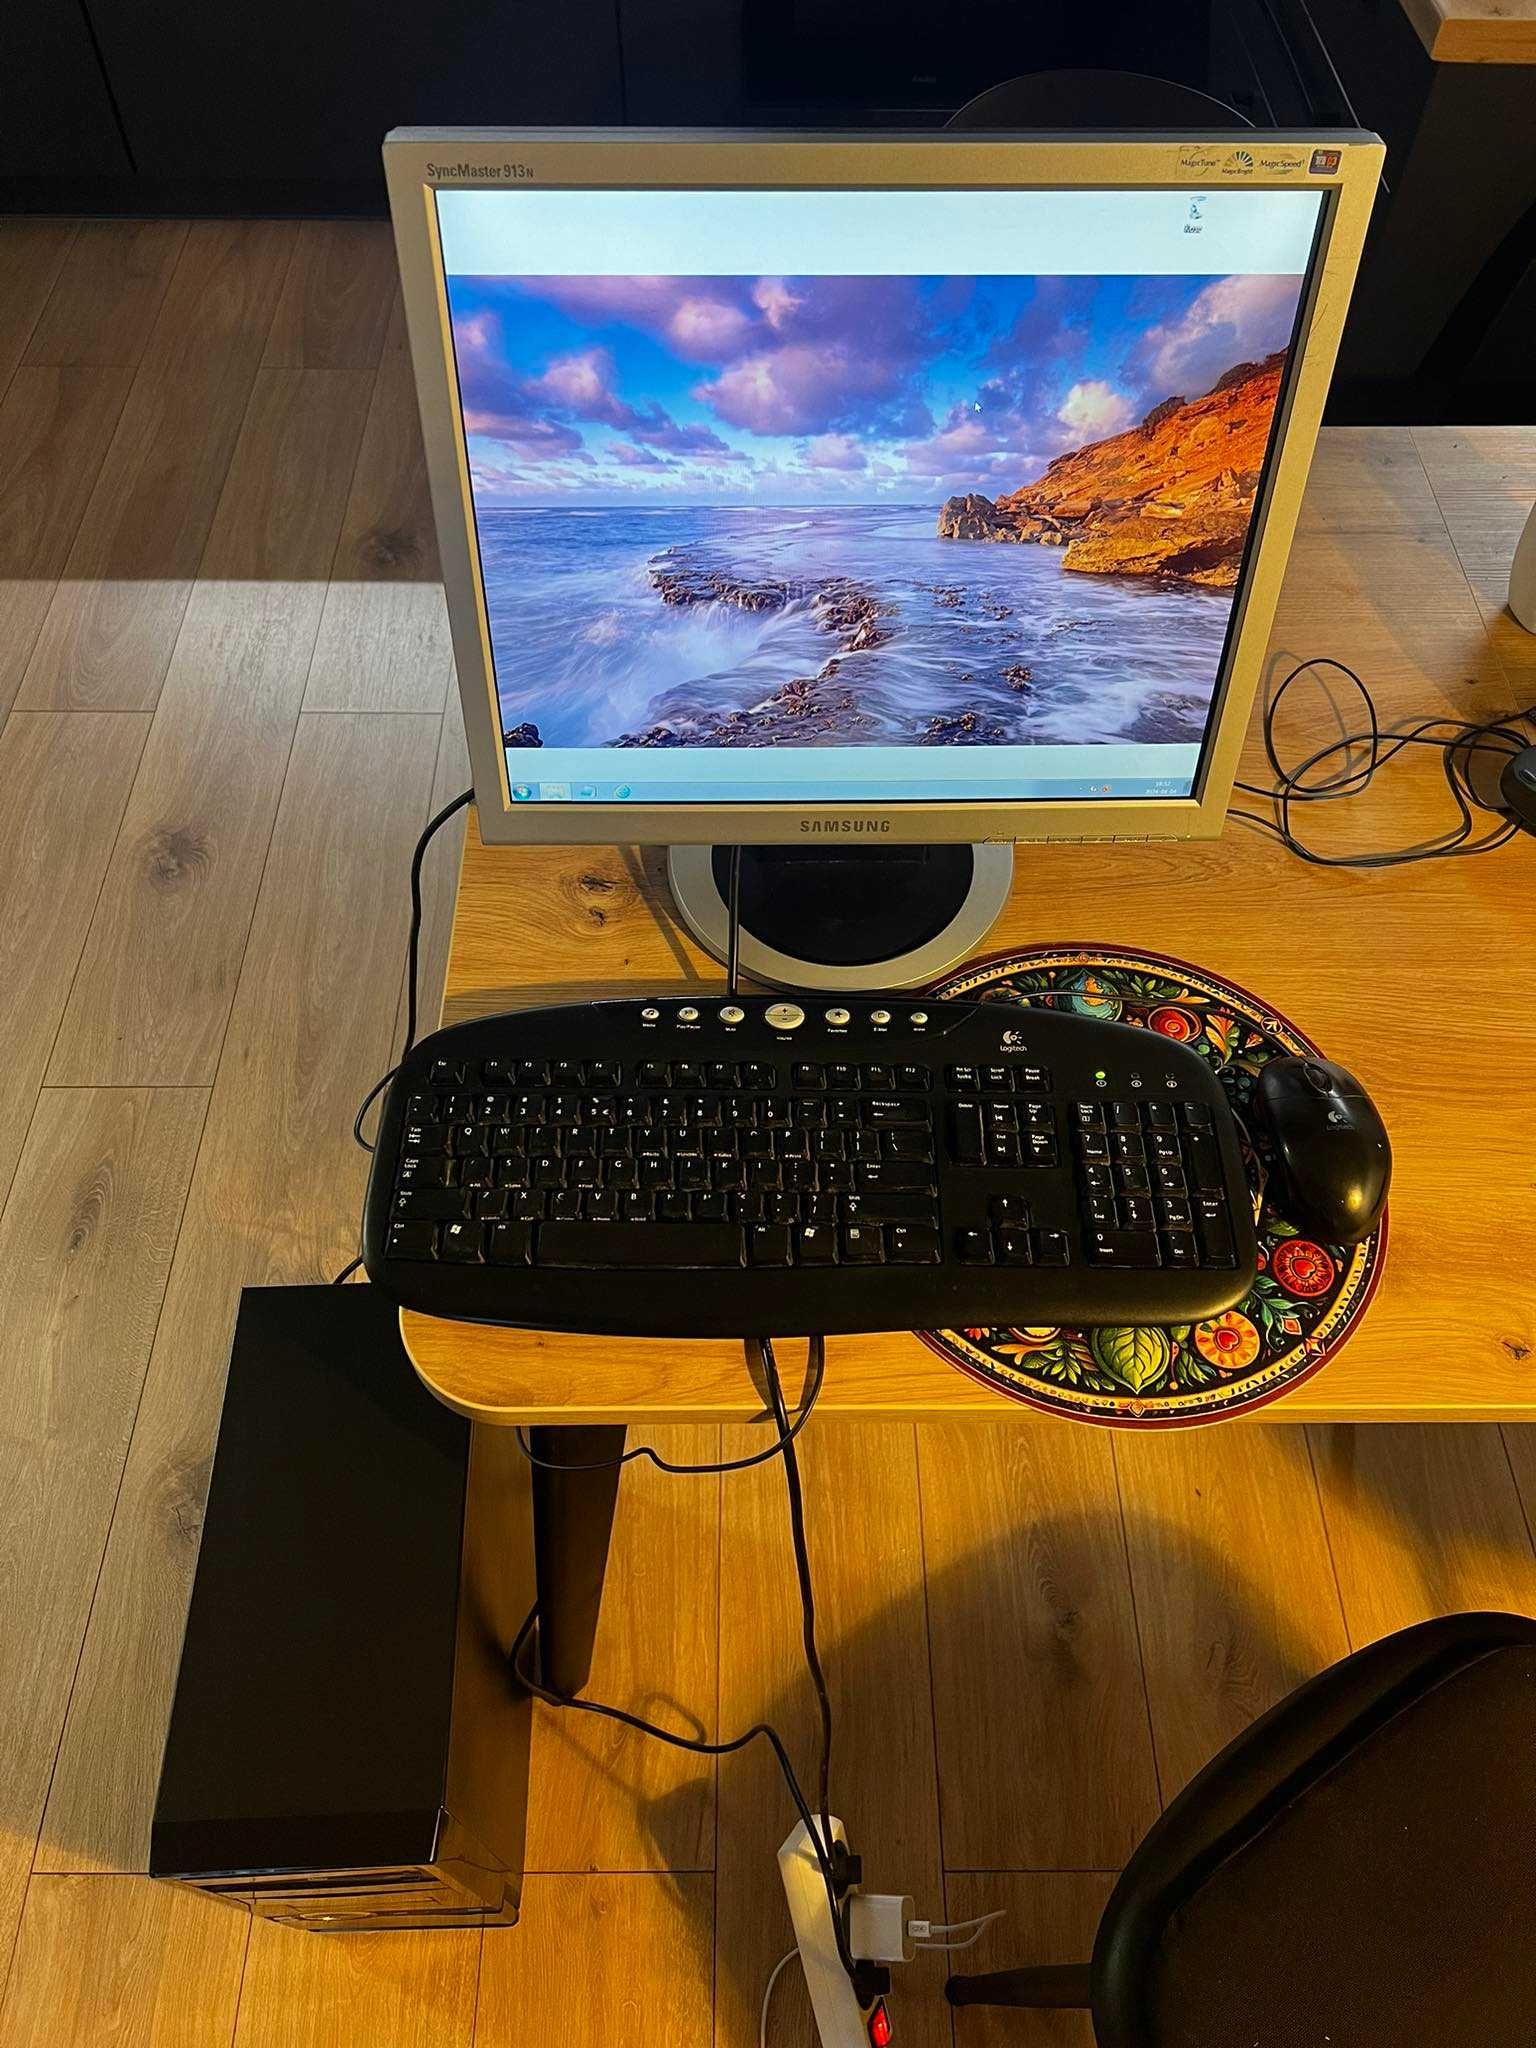 Komputer Intelcore I5 (zestaw z monitorem, klawiaturą i myszą)